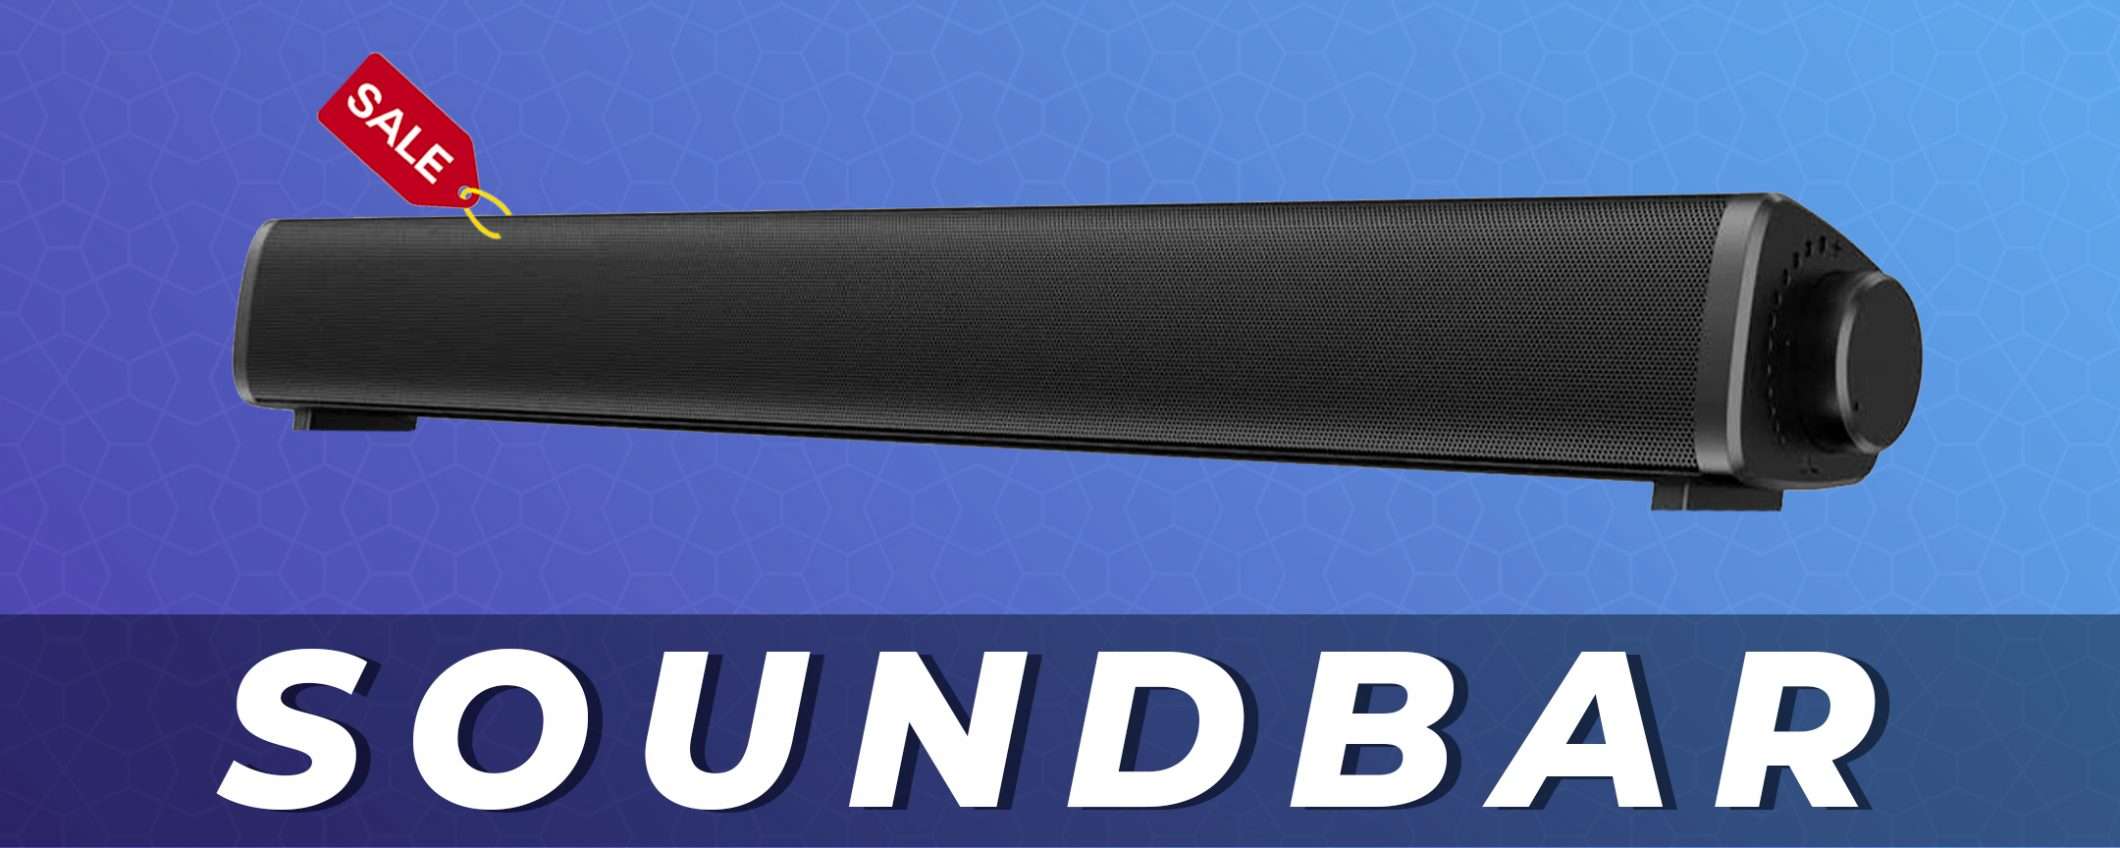 Soundbar Hi-Fi per PC in offerta a metà prezzo (-47%)